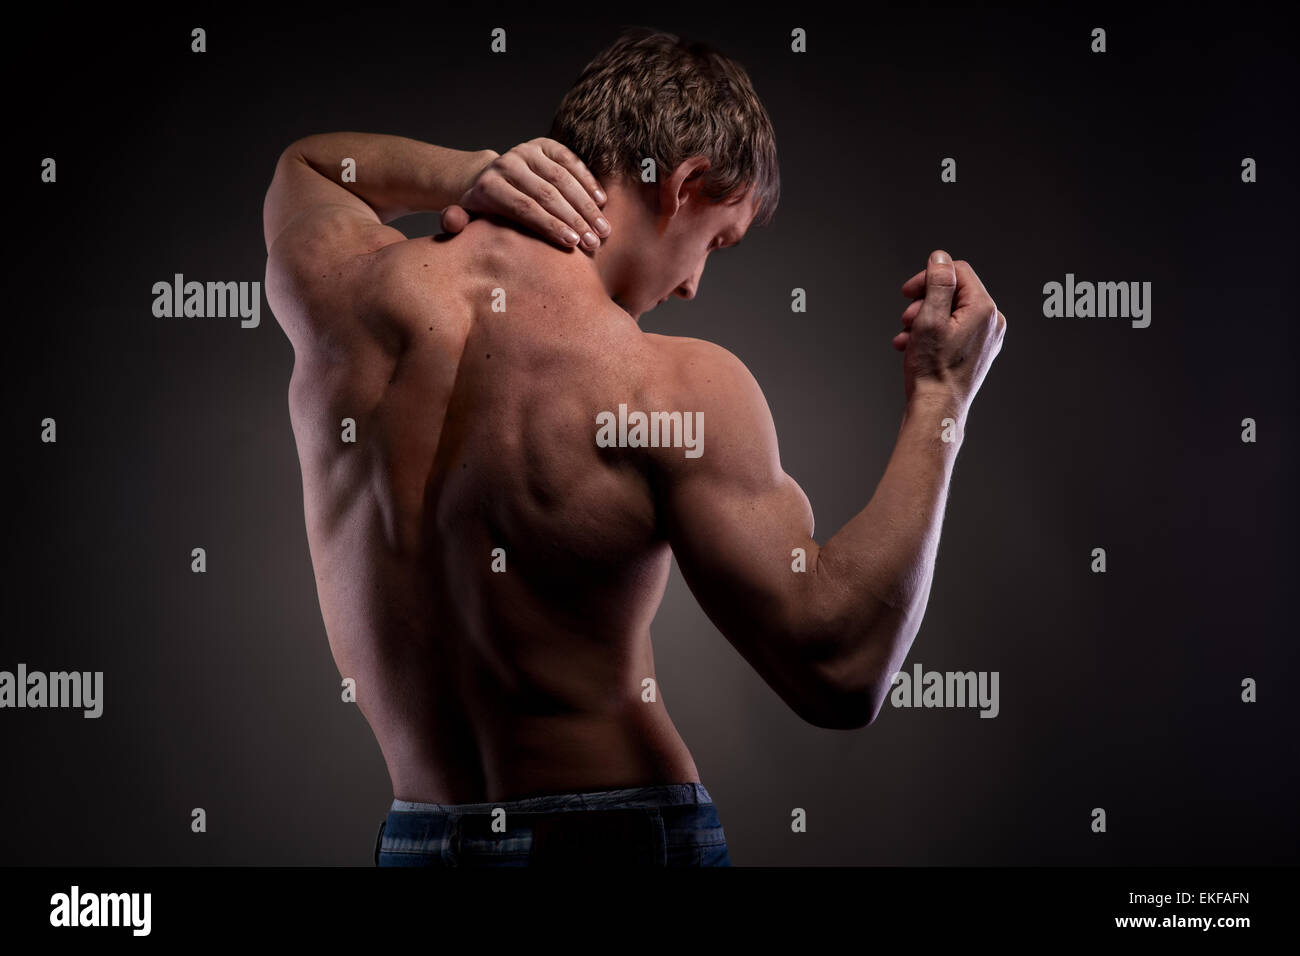 Muskulösen nackten Mann von hinten auf schwarz Stockfoto